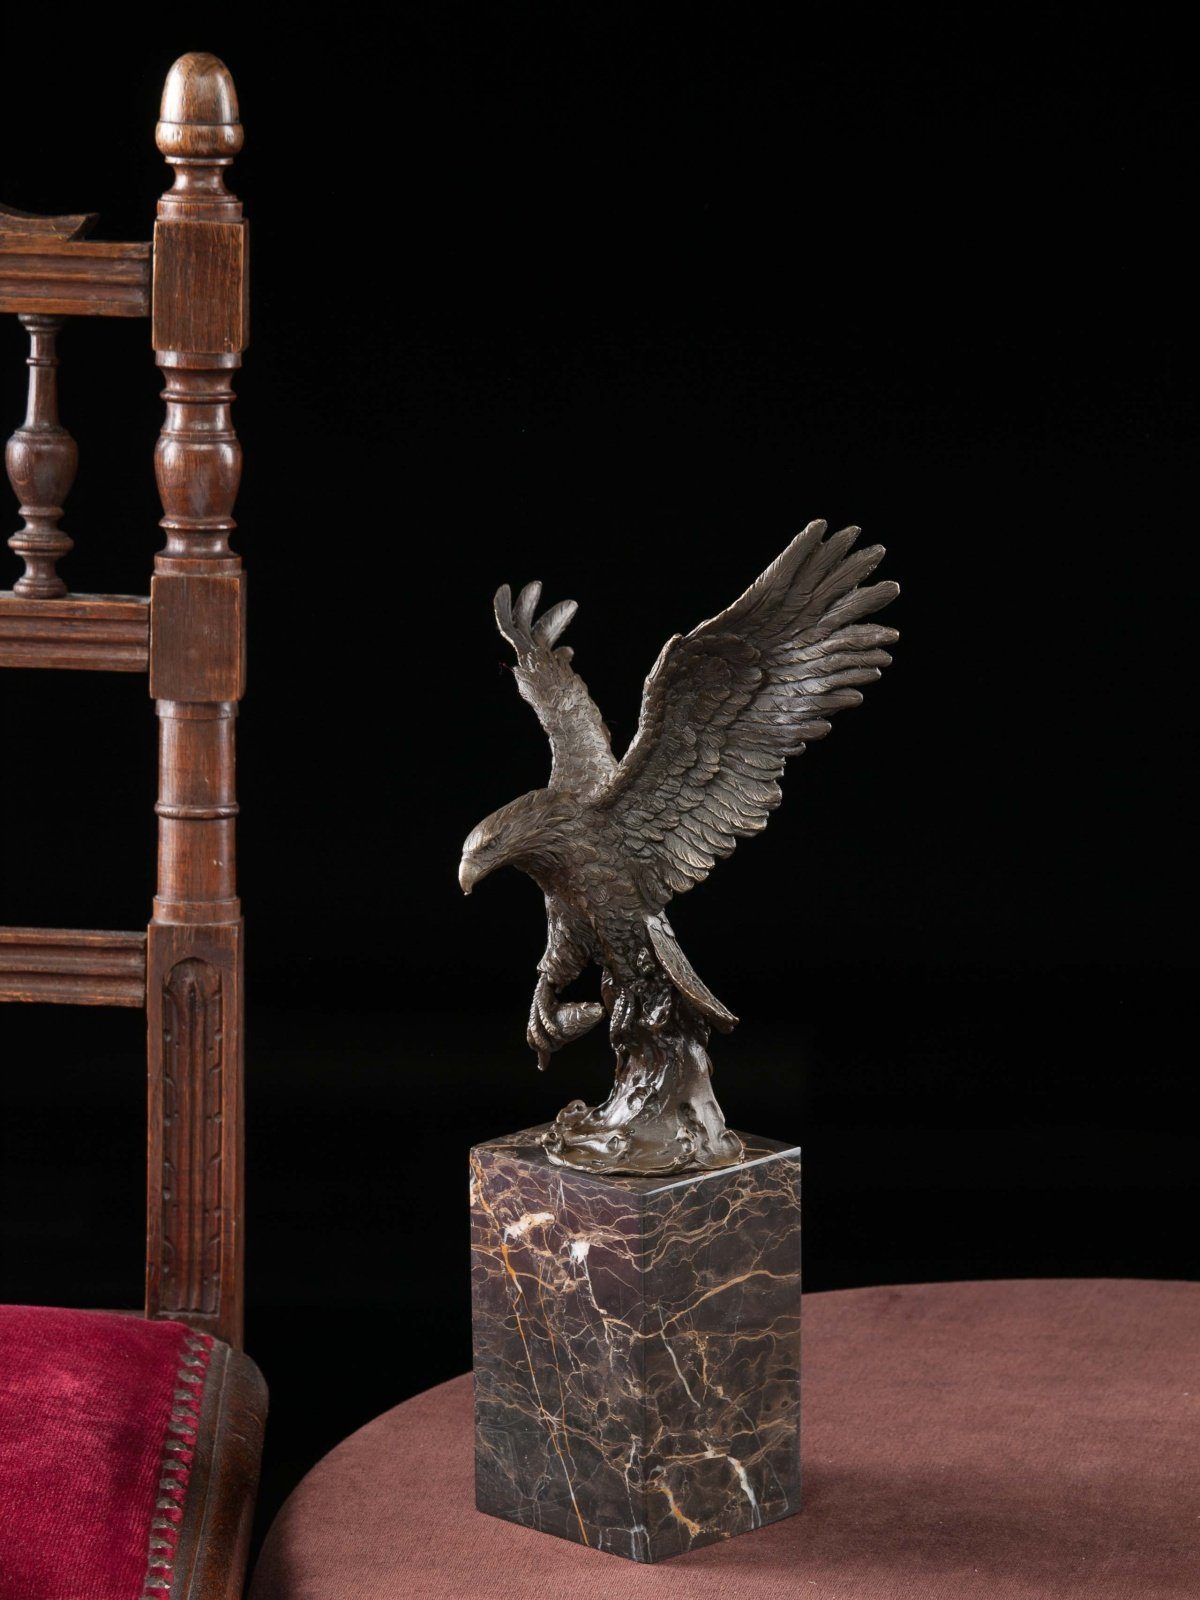 Königsadler Skulptur Eagle Figur Bronzeskulptur Seeadler Aubaho Adler Bronzeskulptur 36cm